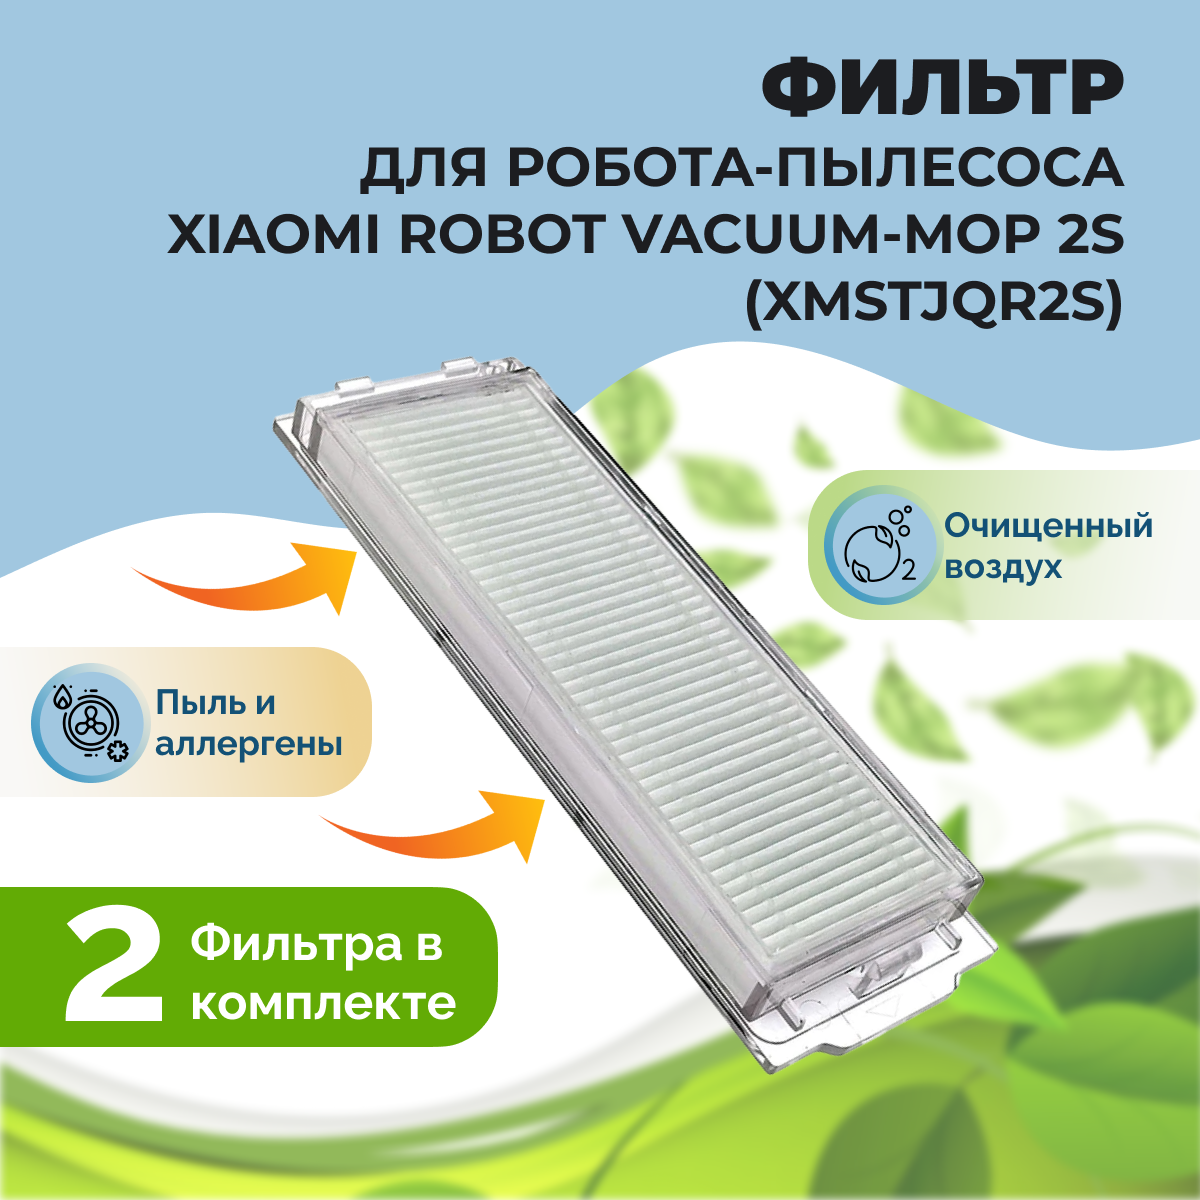 Фильтр для робота-пылесоса Xiaomi Robot Vacuum-Mop 2S (XMSTJQR2S) 558127